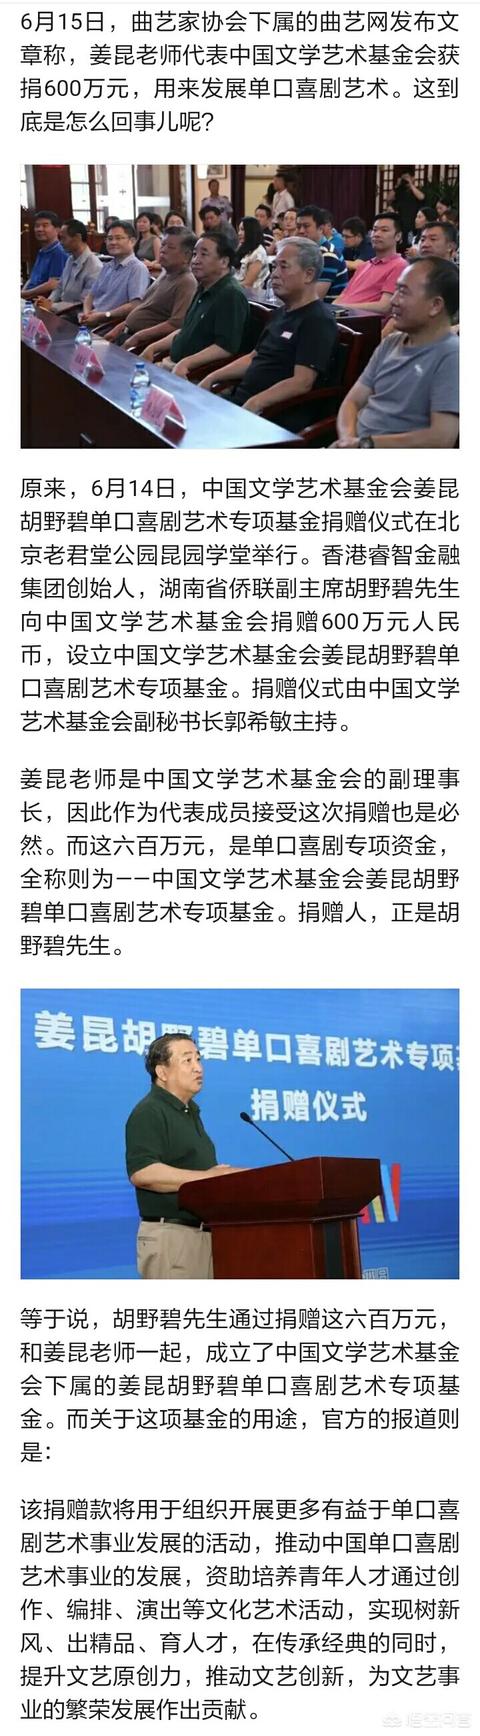 姜昆代表中国文学艺术基金会获捐600万元，专门研究单口喜剧艺术，对此你怎么看